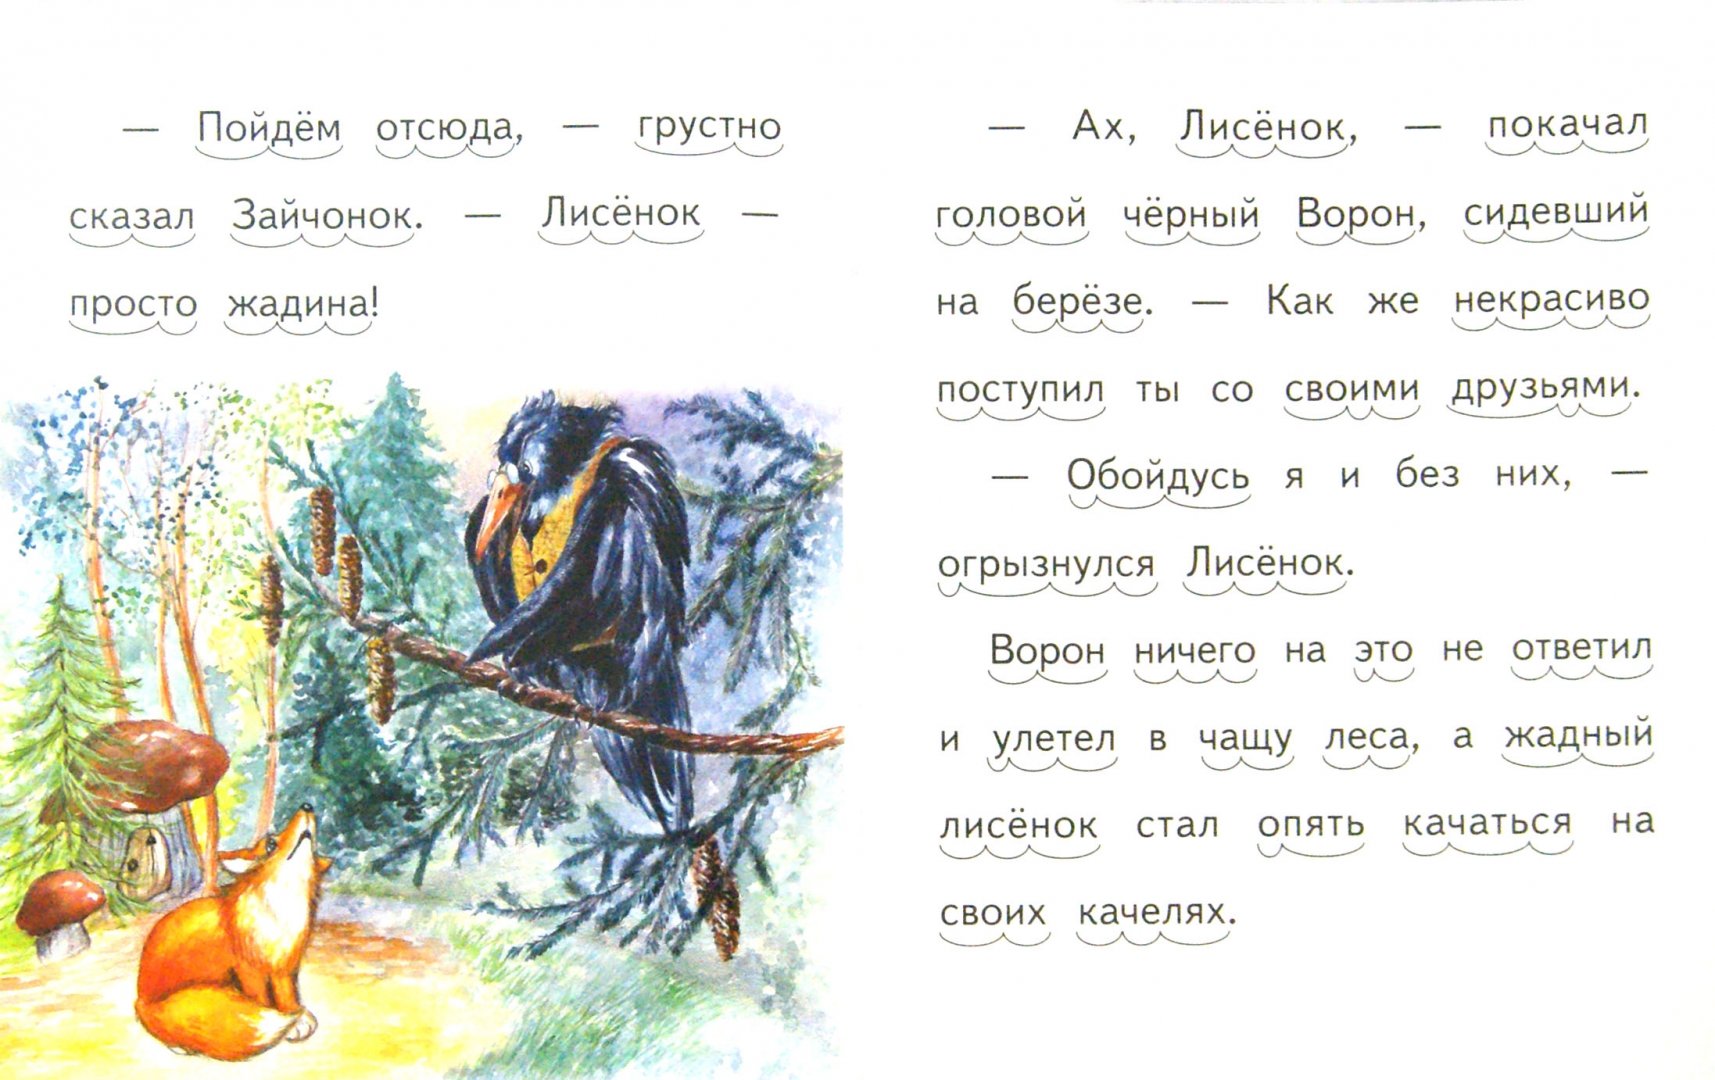 Иллюстрация 1 из 11 для Про жадного лисенка - Елена Ермолова | Лабиринт - книги. Источник: Лабиринт